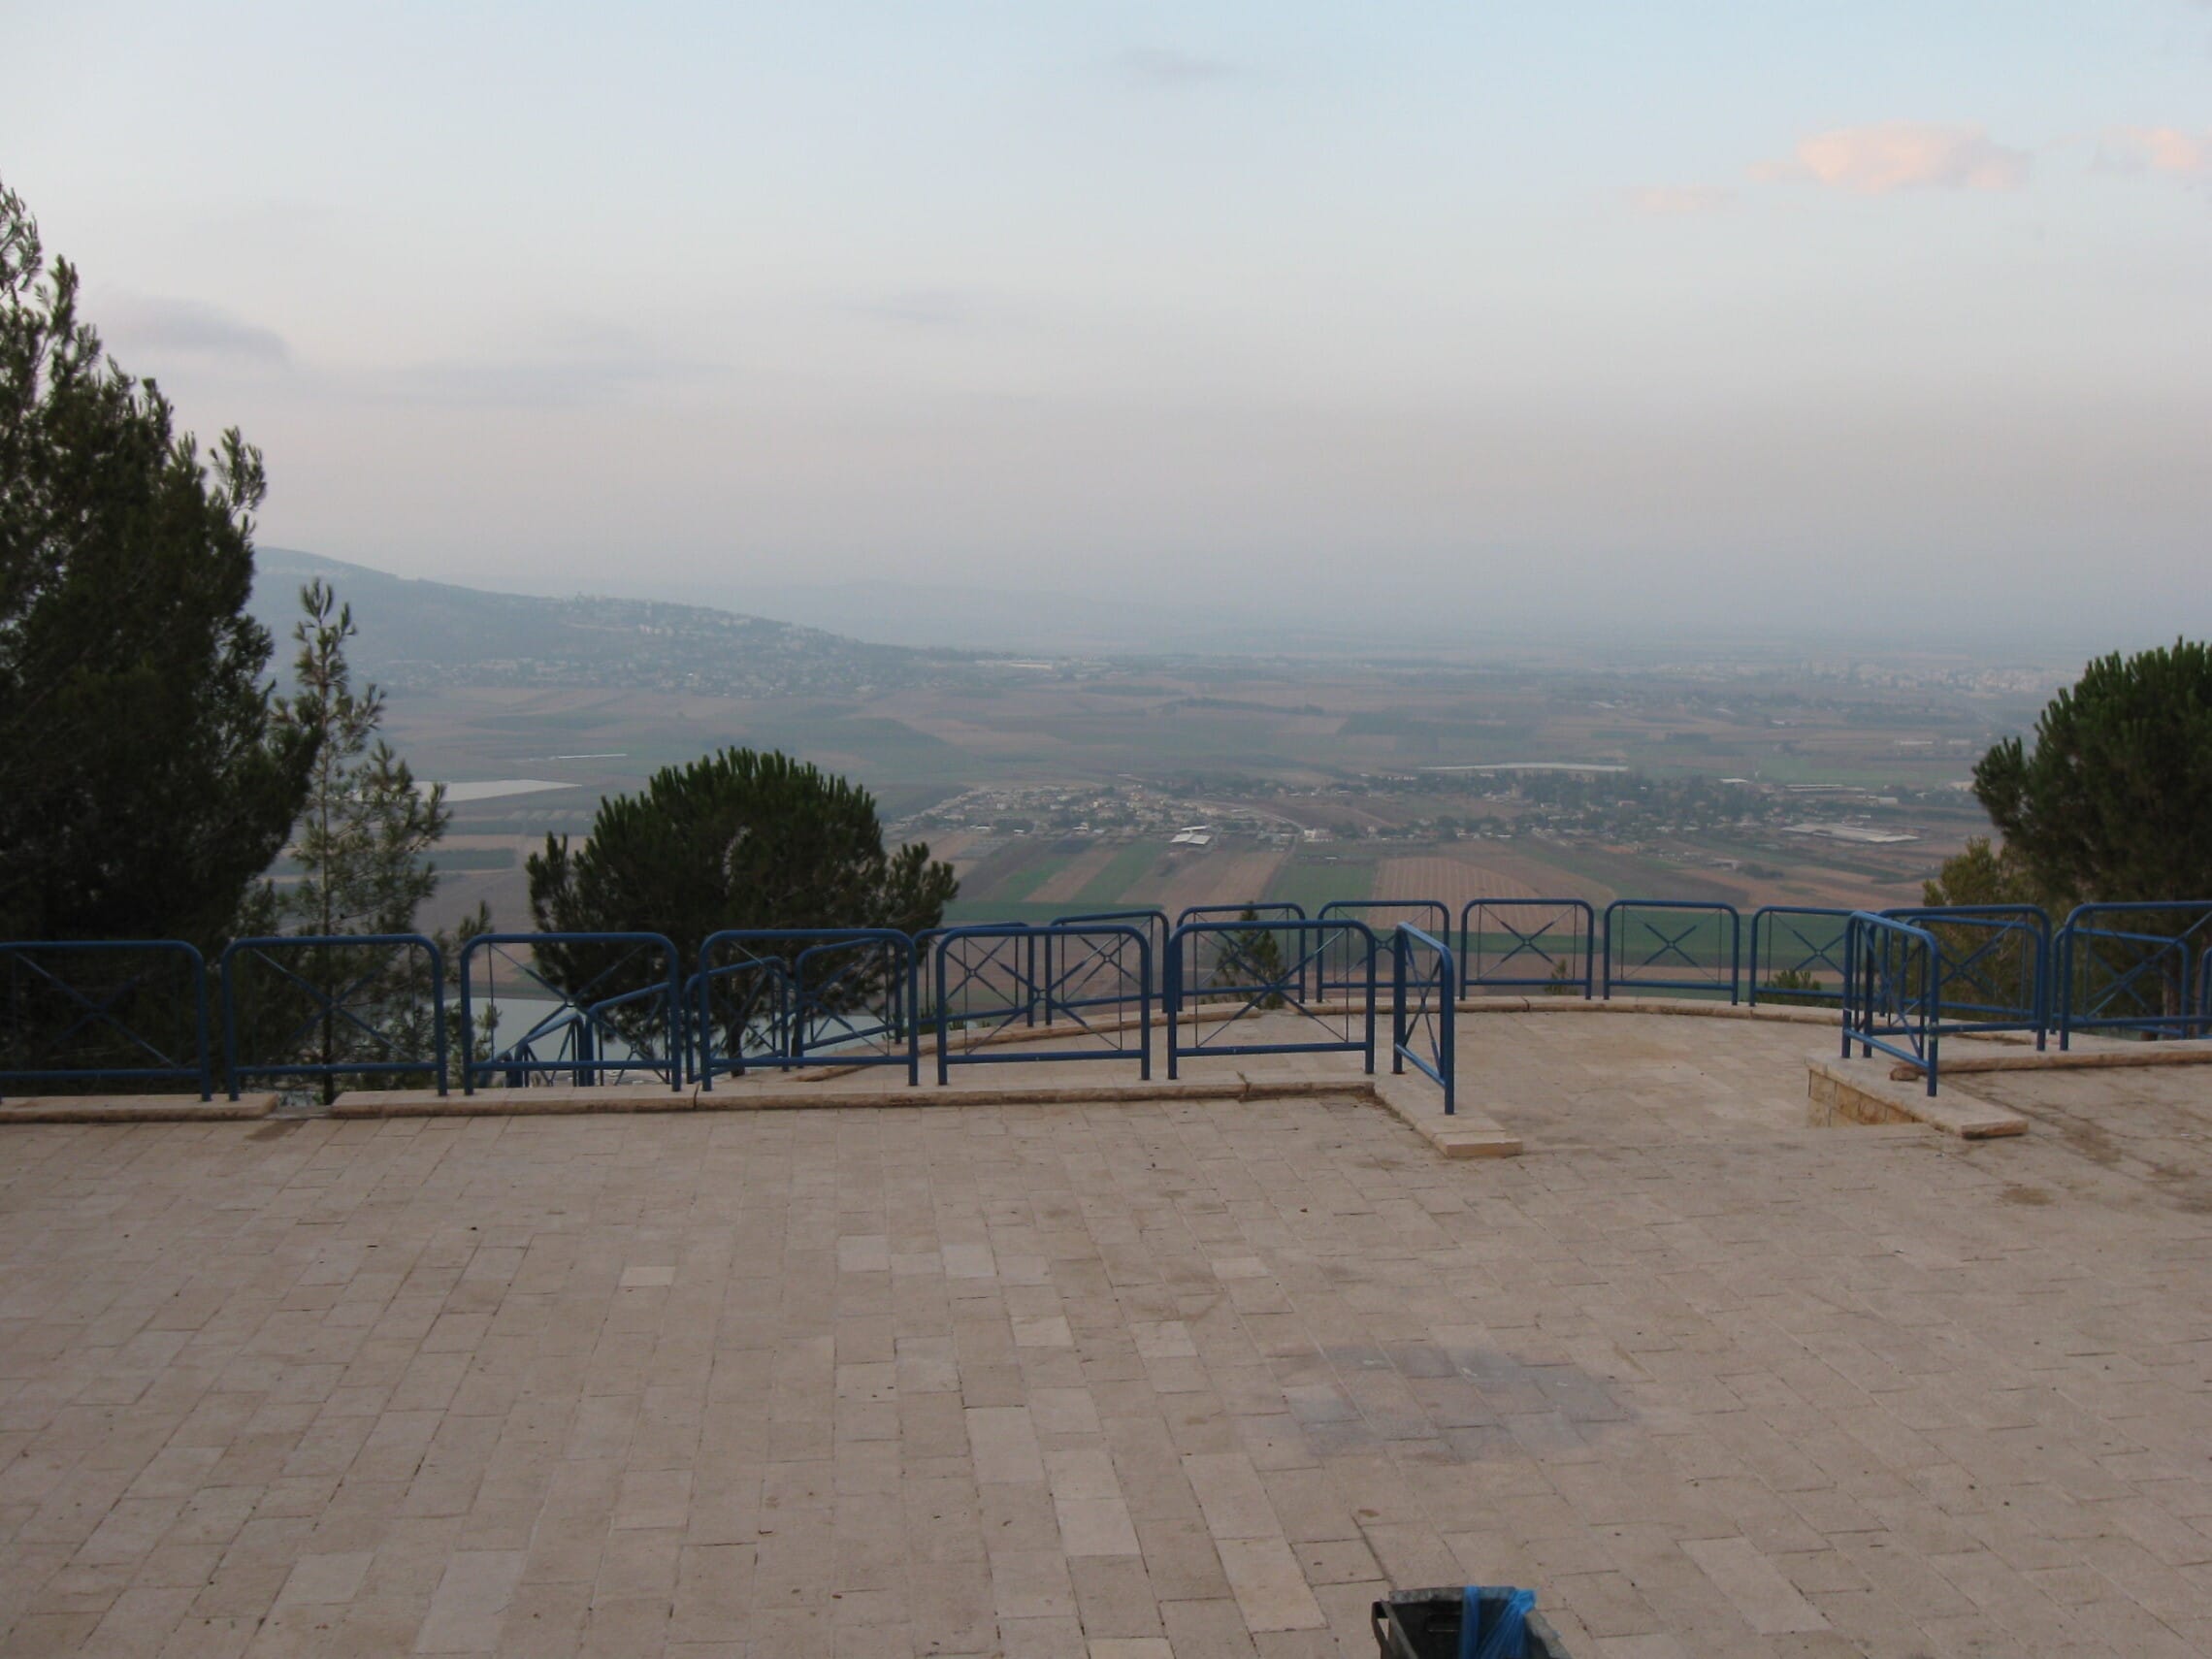 נוף מהר הקפיצה בנצרת, מבט לכיוון עמק יזרעאל (צילום: ויקיפדיה)